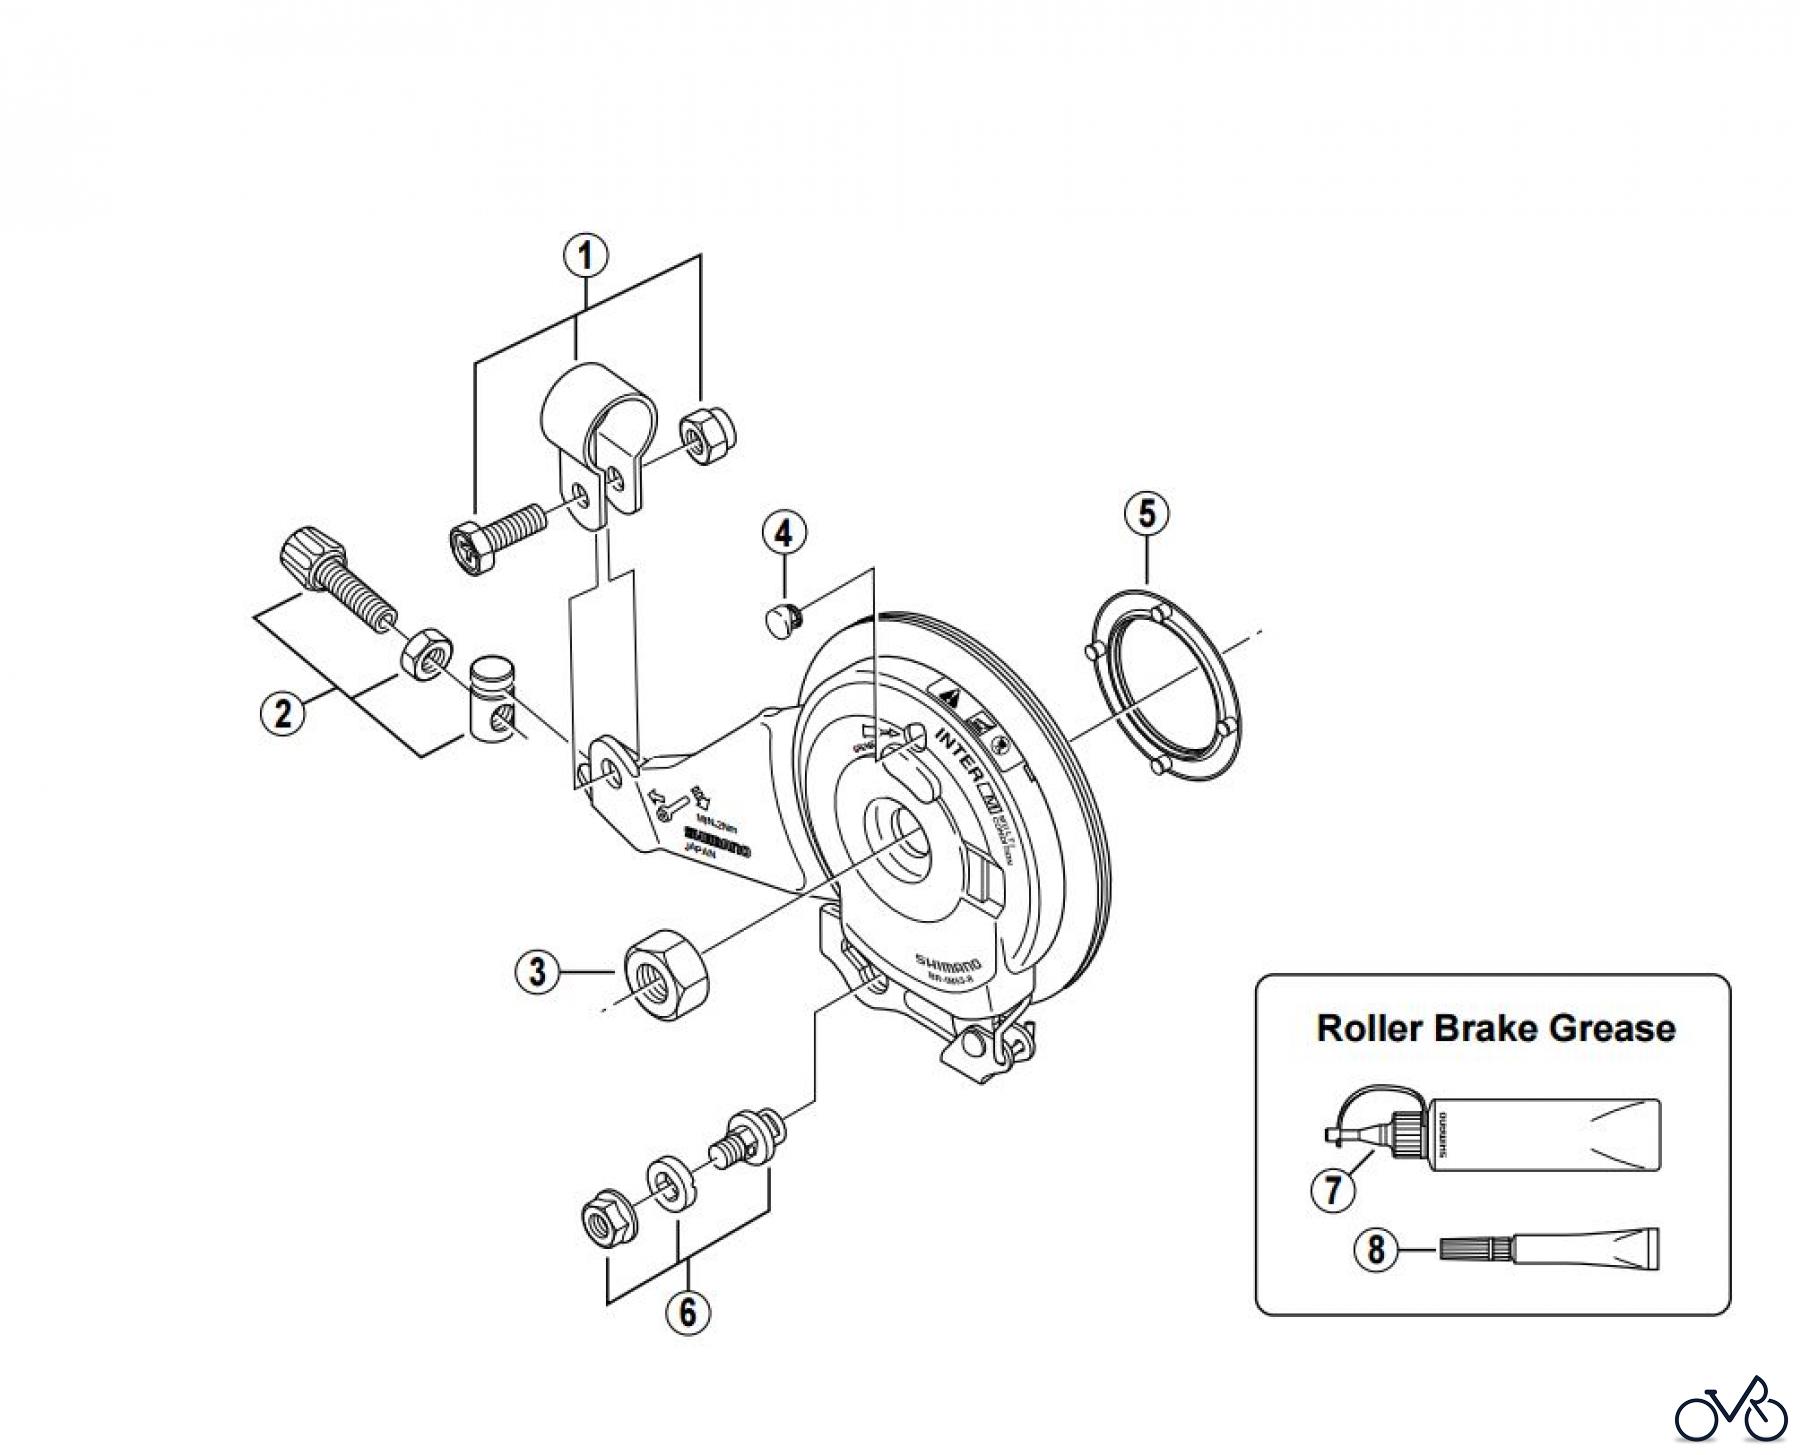  Shimano BR Brake - Bremse BR-IM53-R -2639 Roller Brake